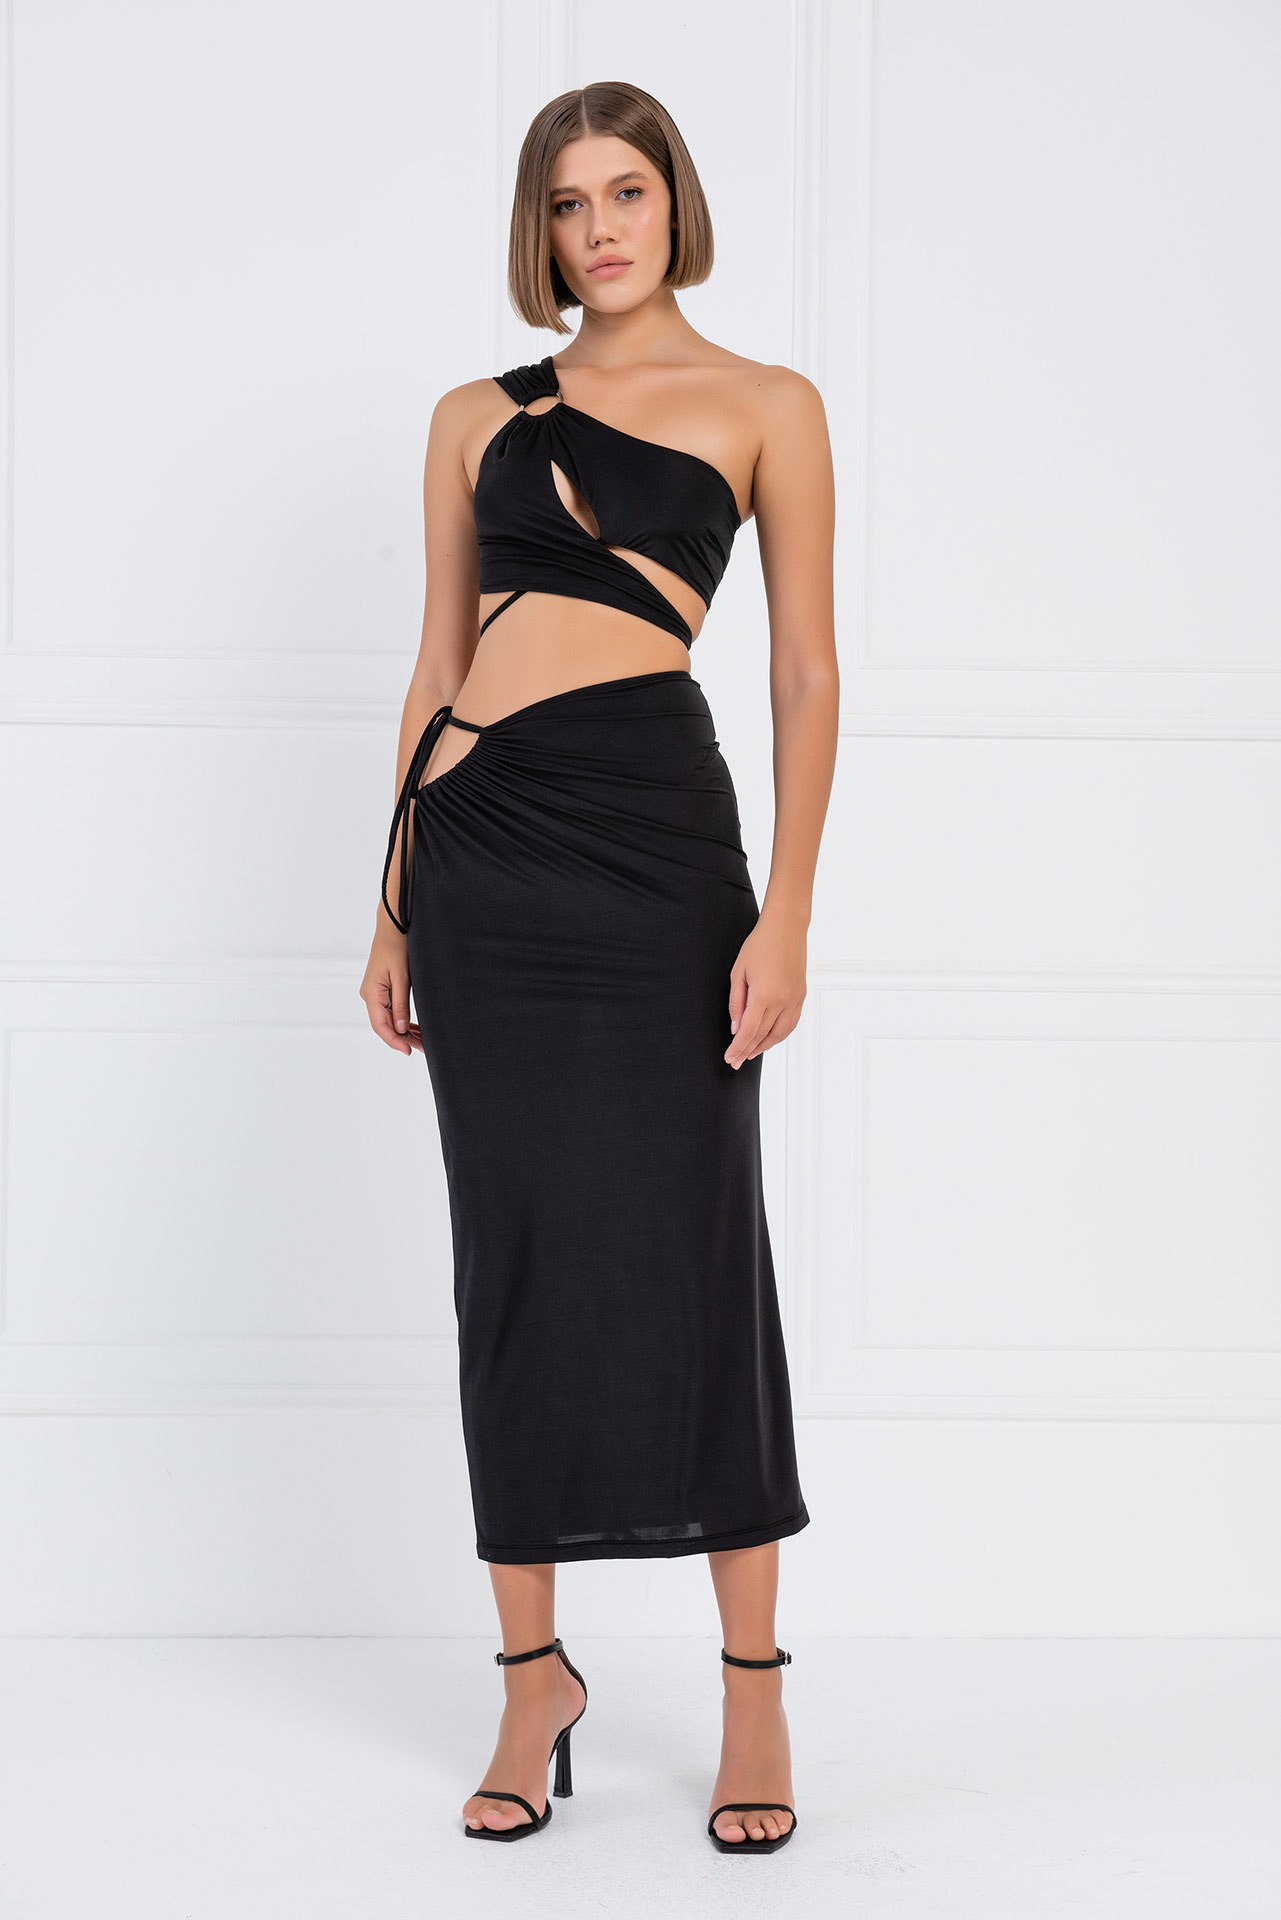 Wholesale Black One-Shoulder Crop Top & Skirt Set